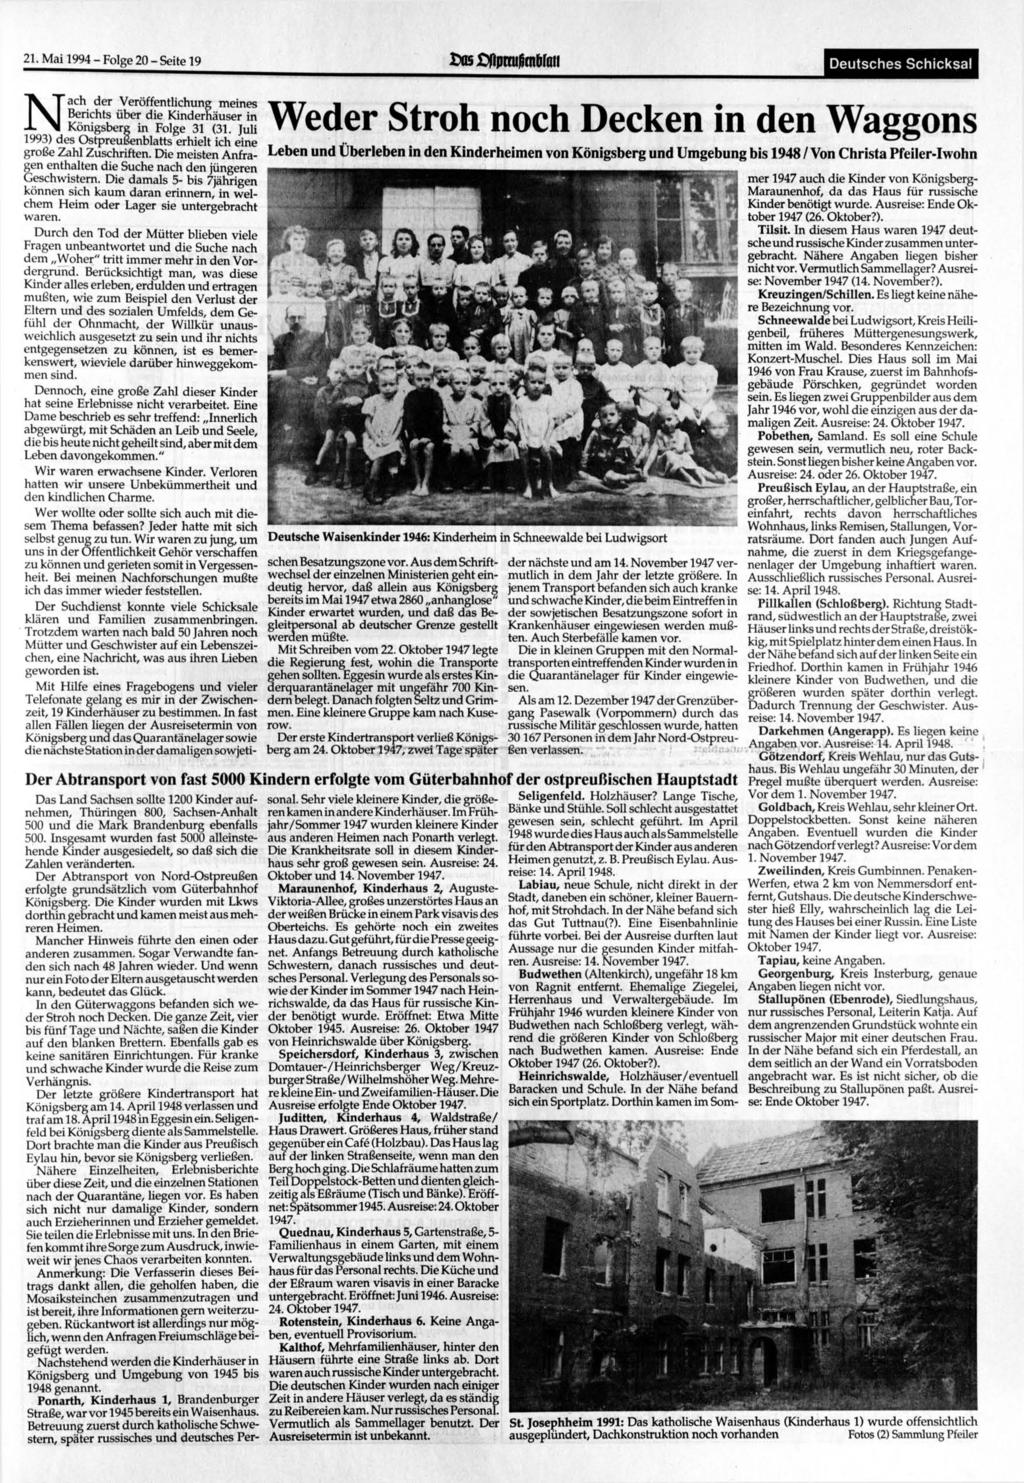 21. Mai 1994-Folge 20 - Seite 19 Deutsches Schicksal Nach der Veröffentlichung meines Berichts über die Kinderhäuser in Königsberg in Folge 31 (31.